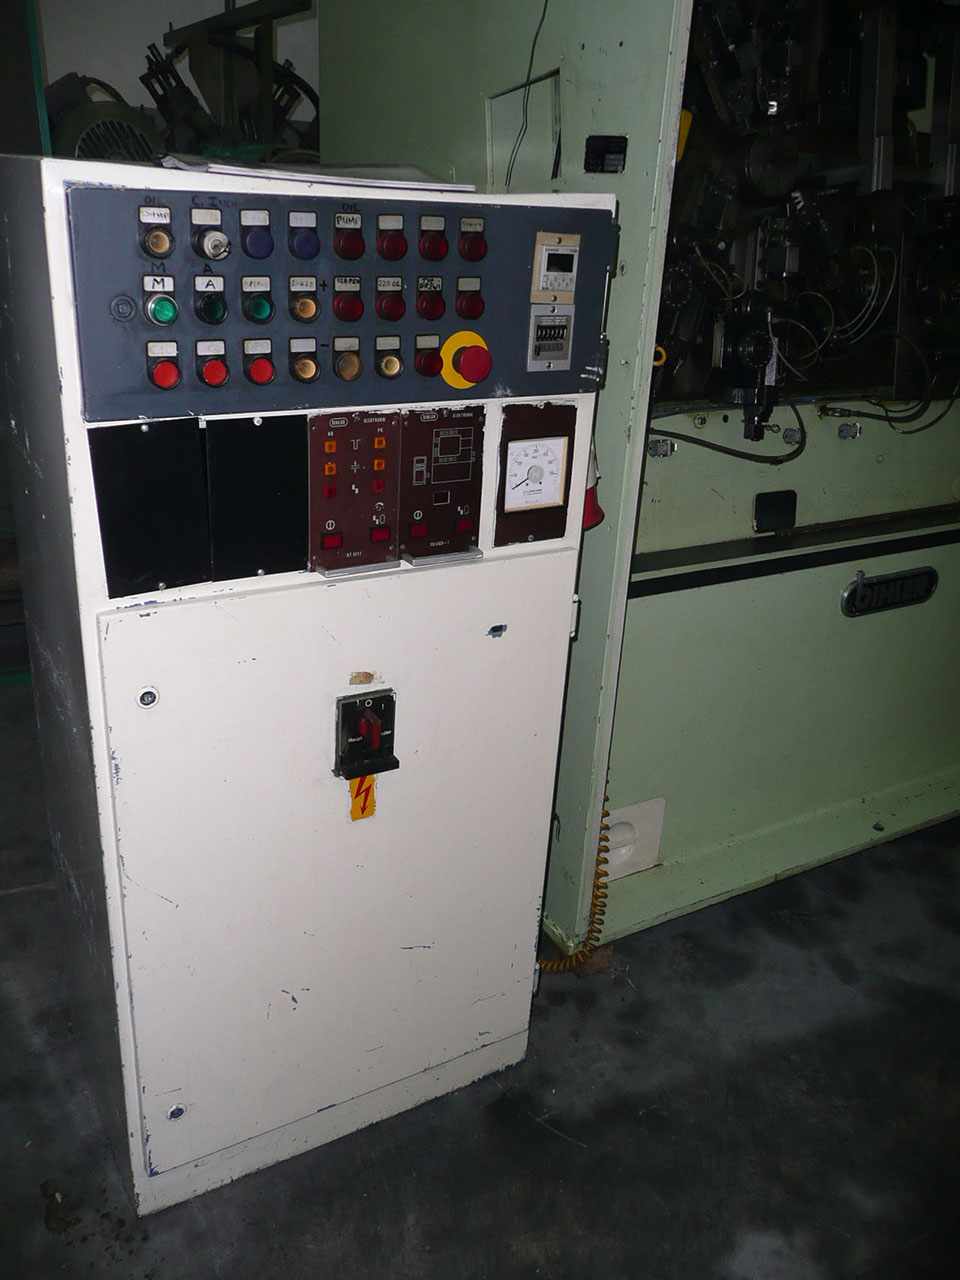 Bihler RM 40 máquina de estampagem e conformação PR2476, utilizada